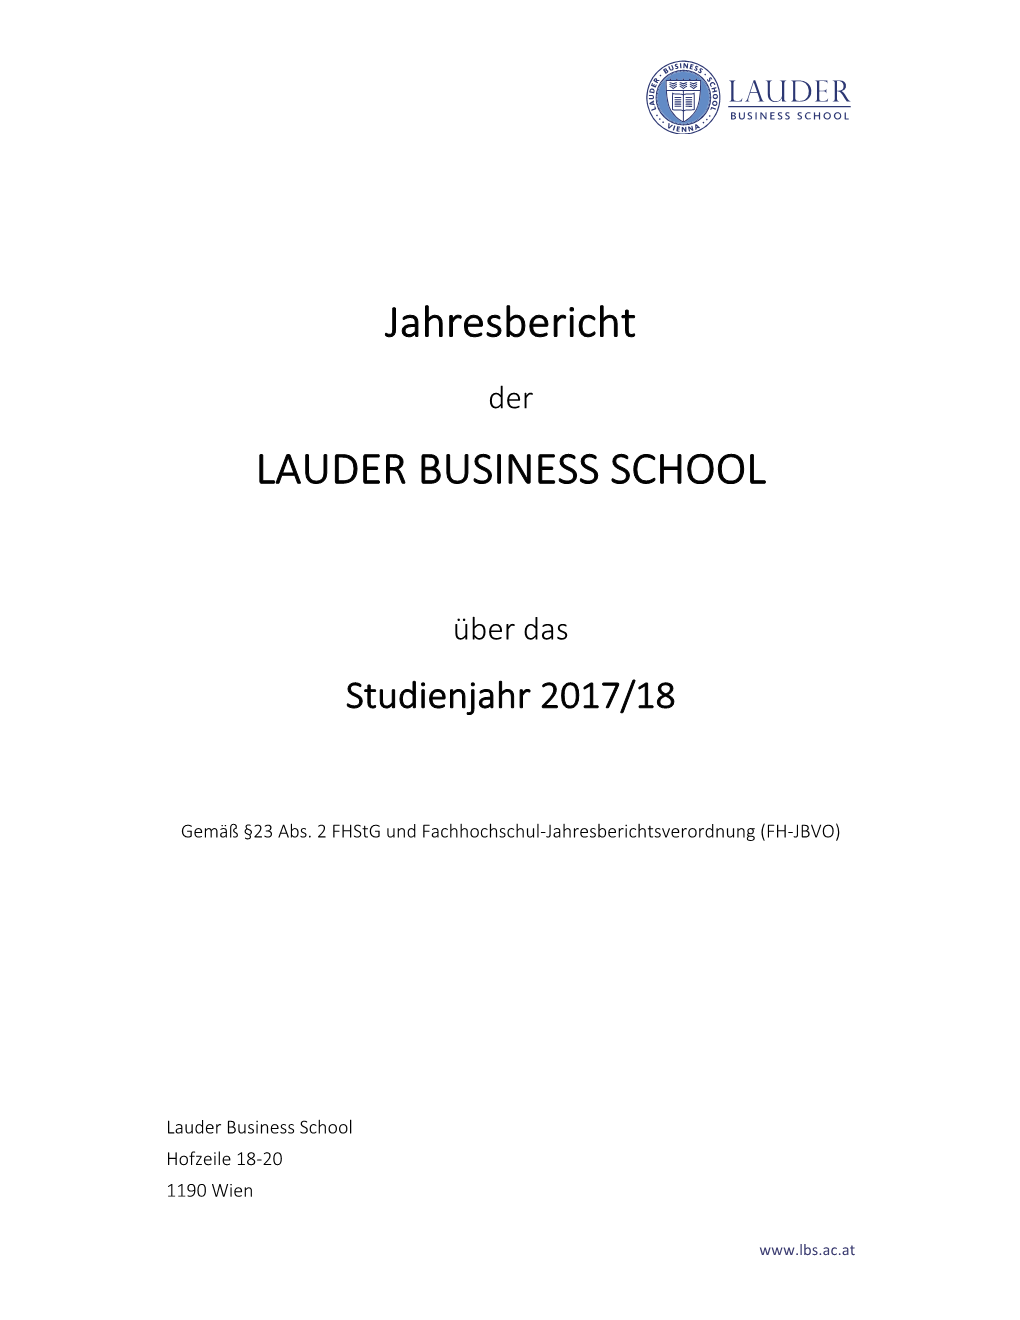 Jahresbericht LAUDER BUSINESS SCHOOL